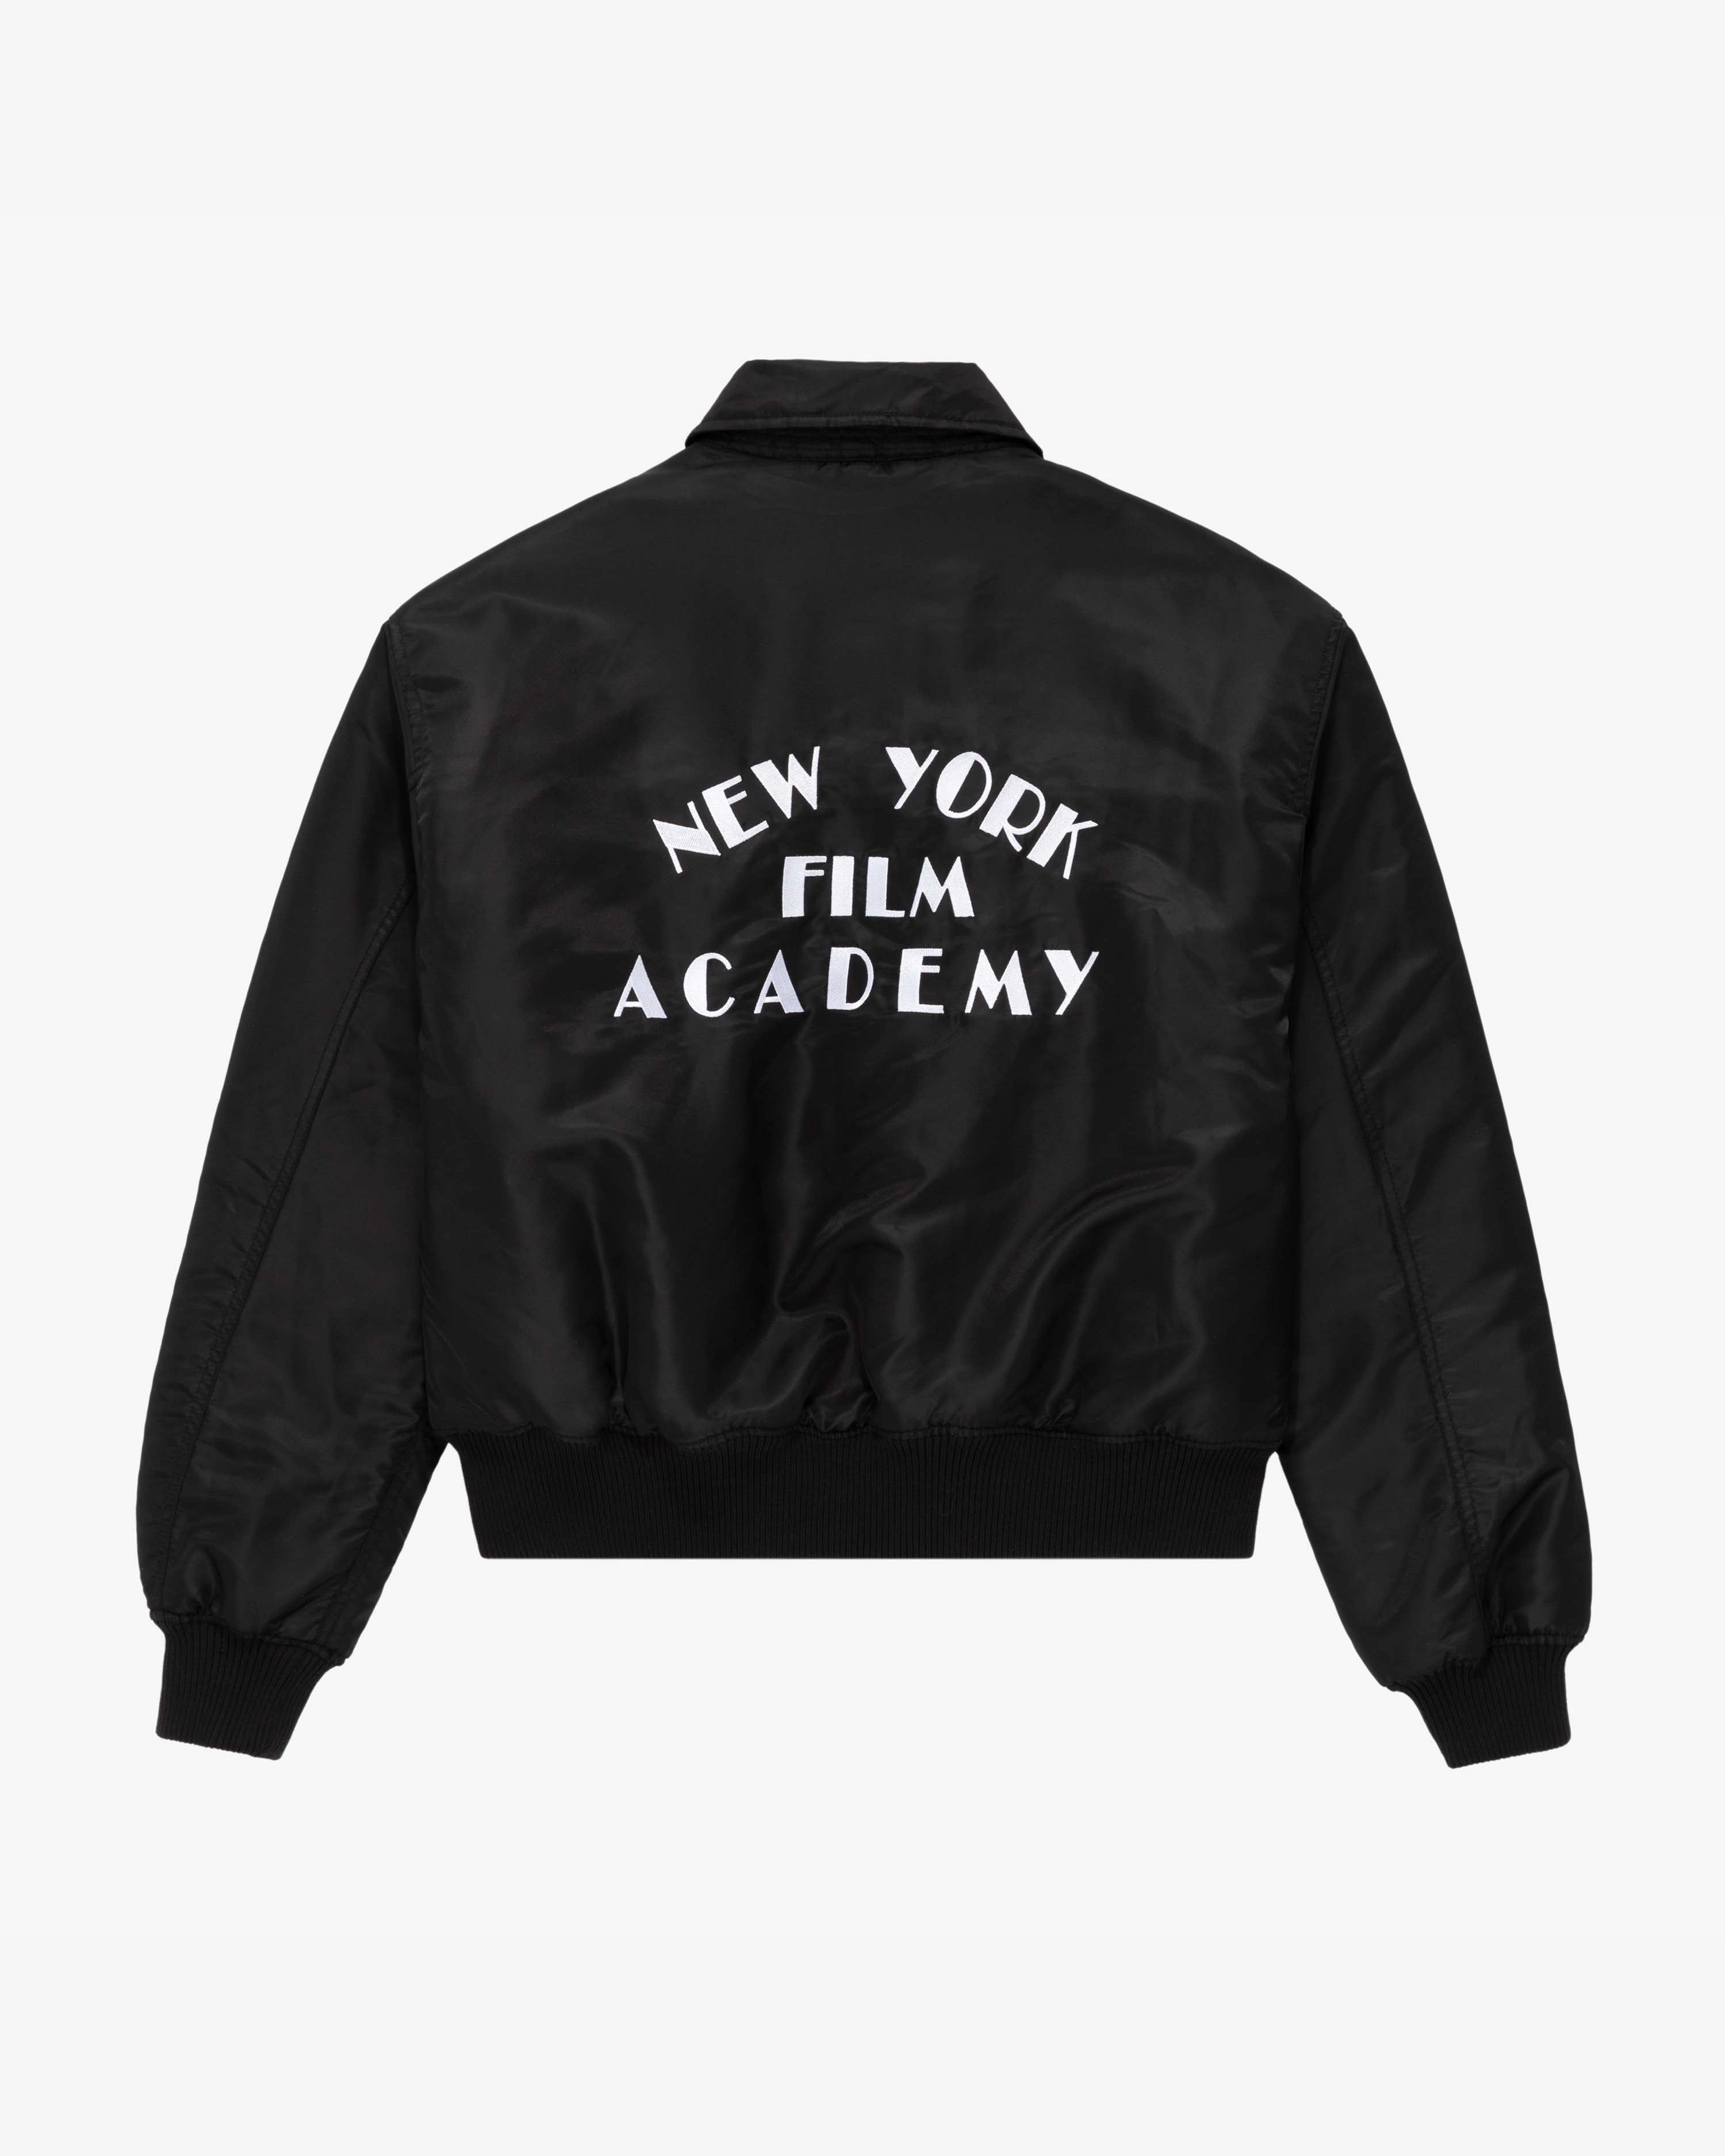 Vintage NYFA Flyers Jacket